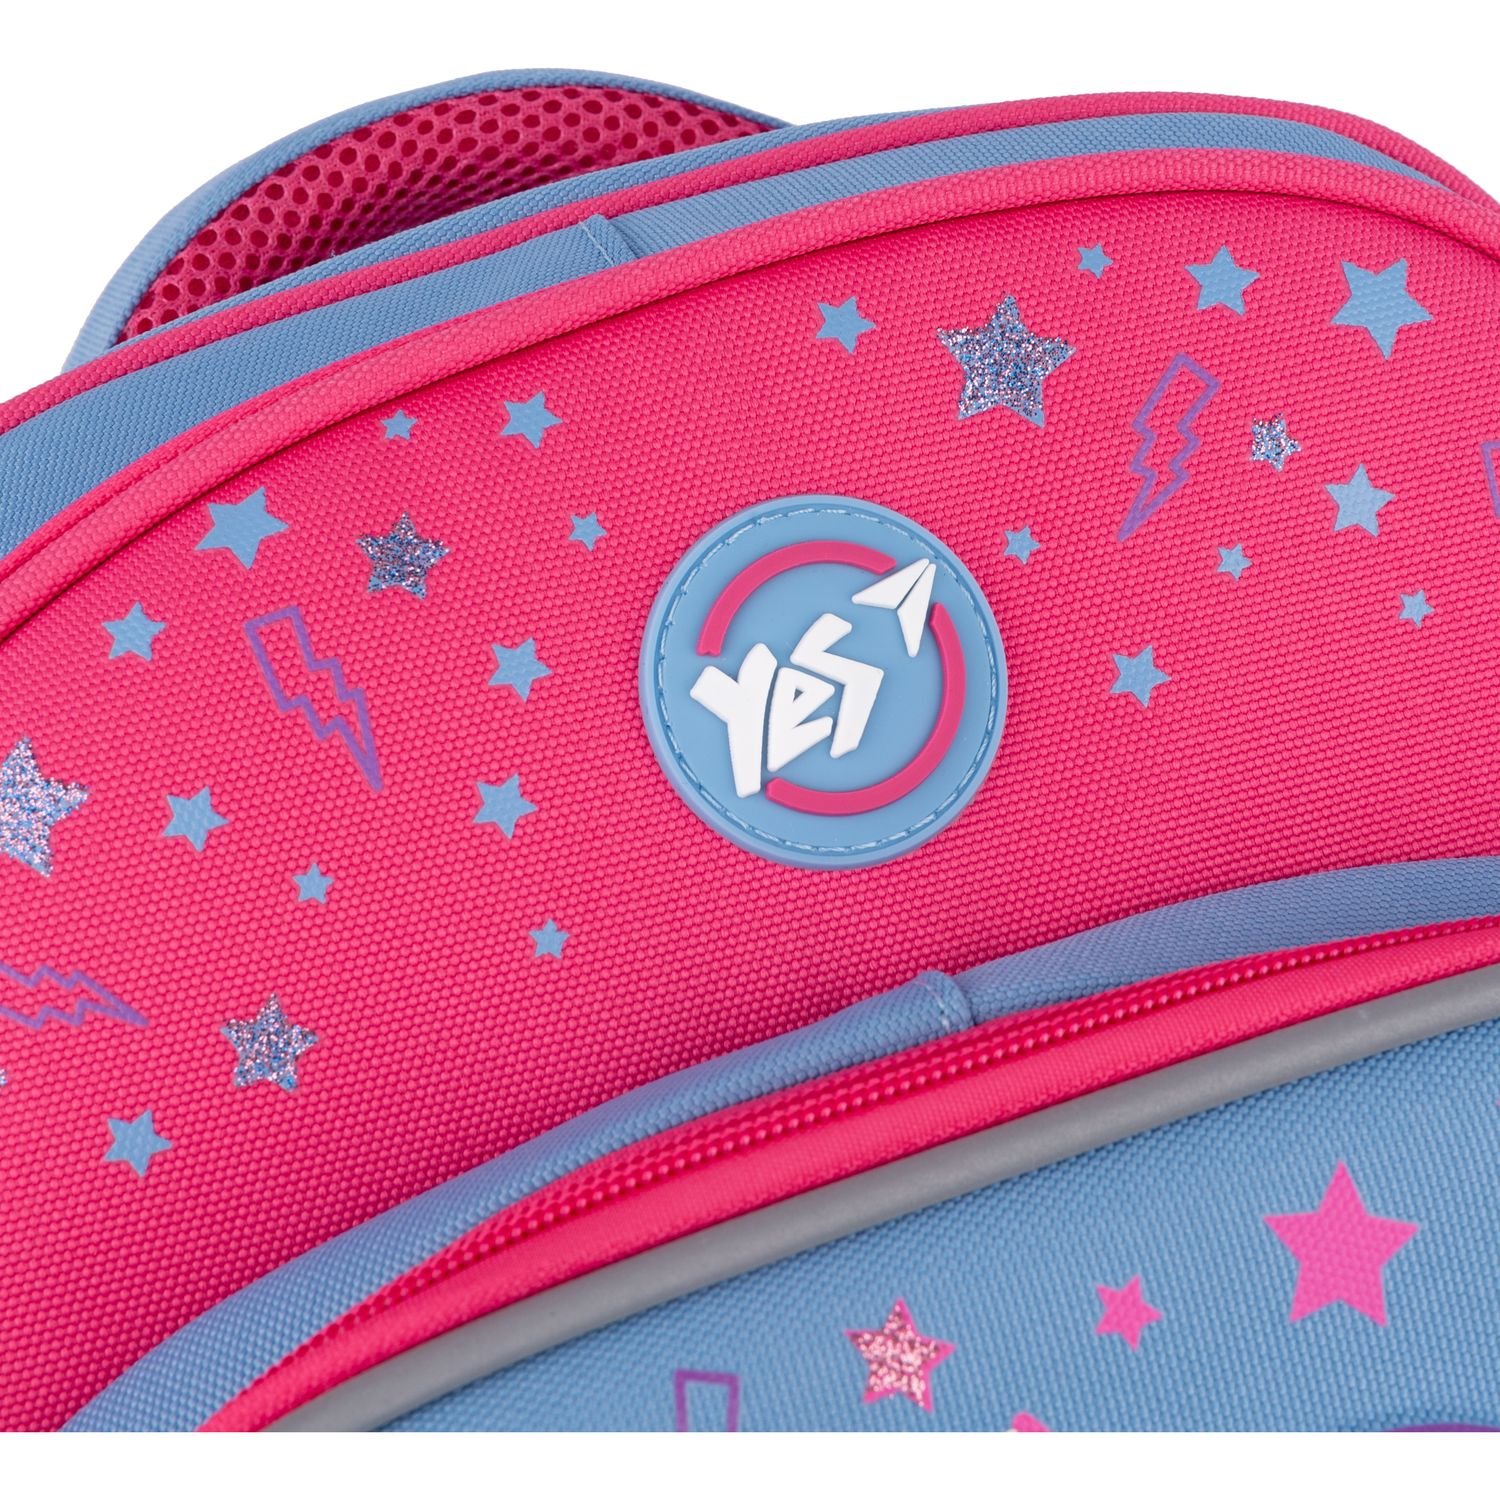 Рюкзак Yes S-91 Girls style, сиреневый с розовым (553642) - фото 9